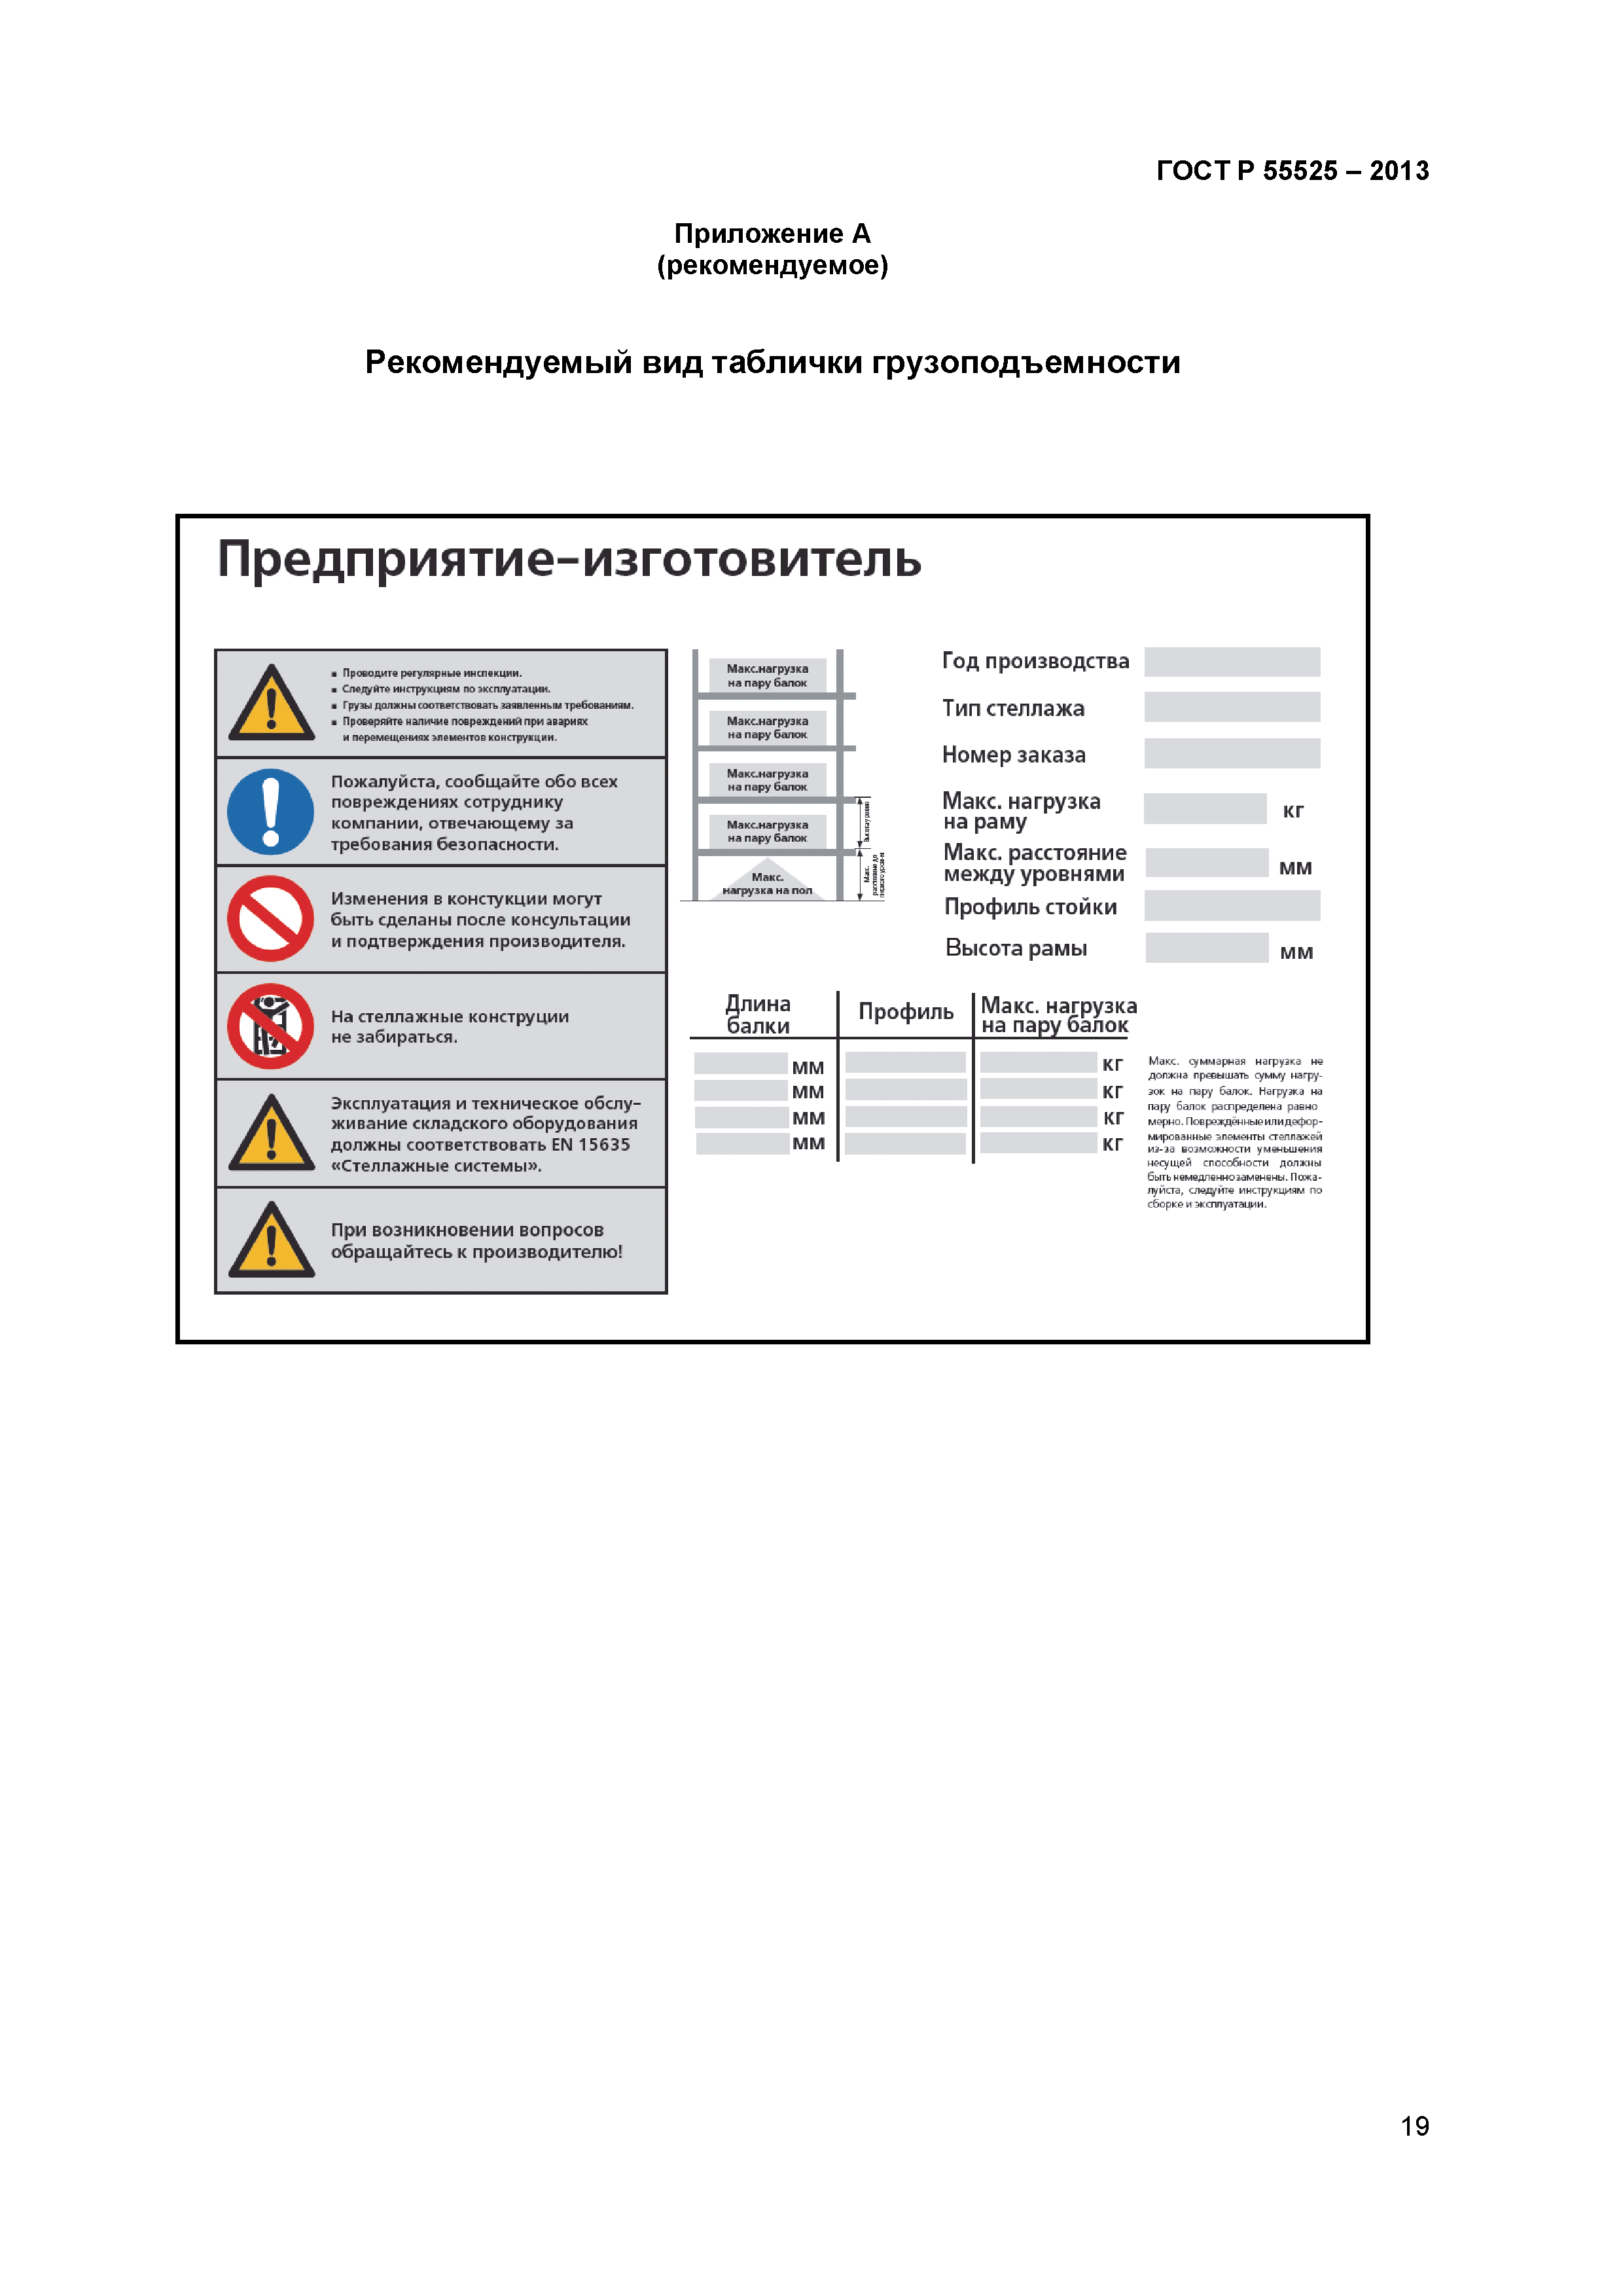 Образец таблички на стеллажах с указанием допустимой нагрузки